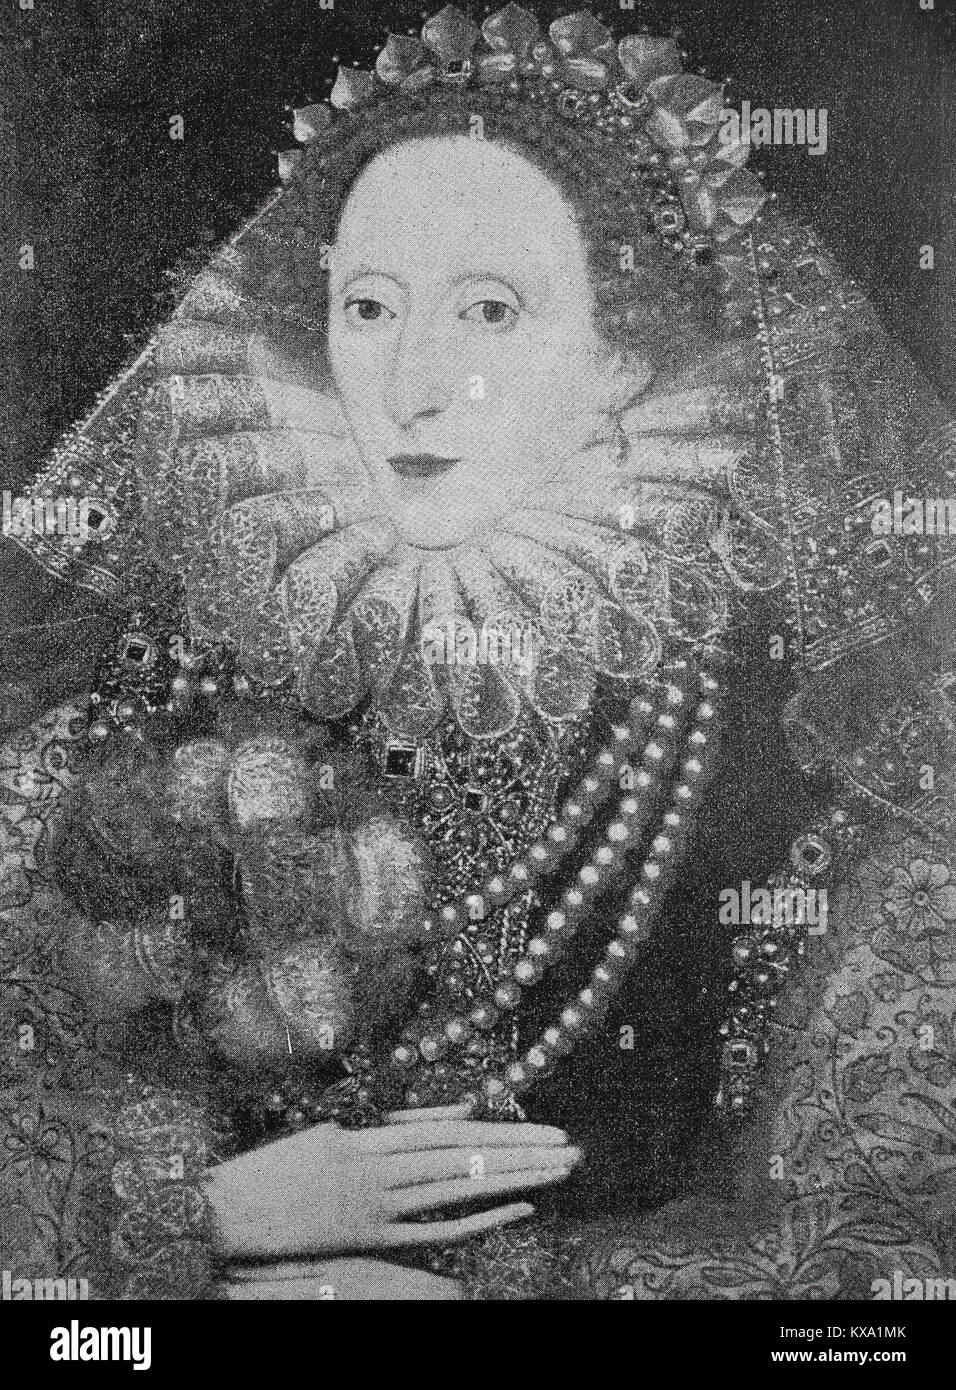 Elizabeth I, el 7 de septiembre de 1533 - 24 de marzo de 1603, era la reina de Inglaterra e Irlanda desde el 17 de noviembre de 1558, hasta su muerte el 24 de marzo de 1603. A veces se denomina la reina virgen, Gloriana o Buena Reina Bess, pintura de Zucchero en Hamptoncourt después de una fotografía original por el Observatorio W.M. Spooner & Co. en Londres, Inglaterra, mejor reproducción digital de un original xilografía o ilustración desde el año 1880 Foto de stock